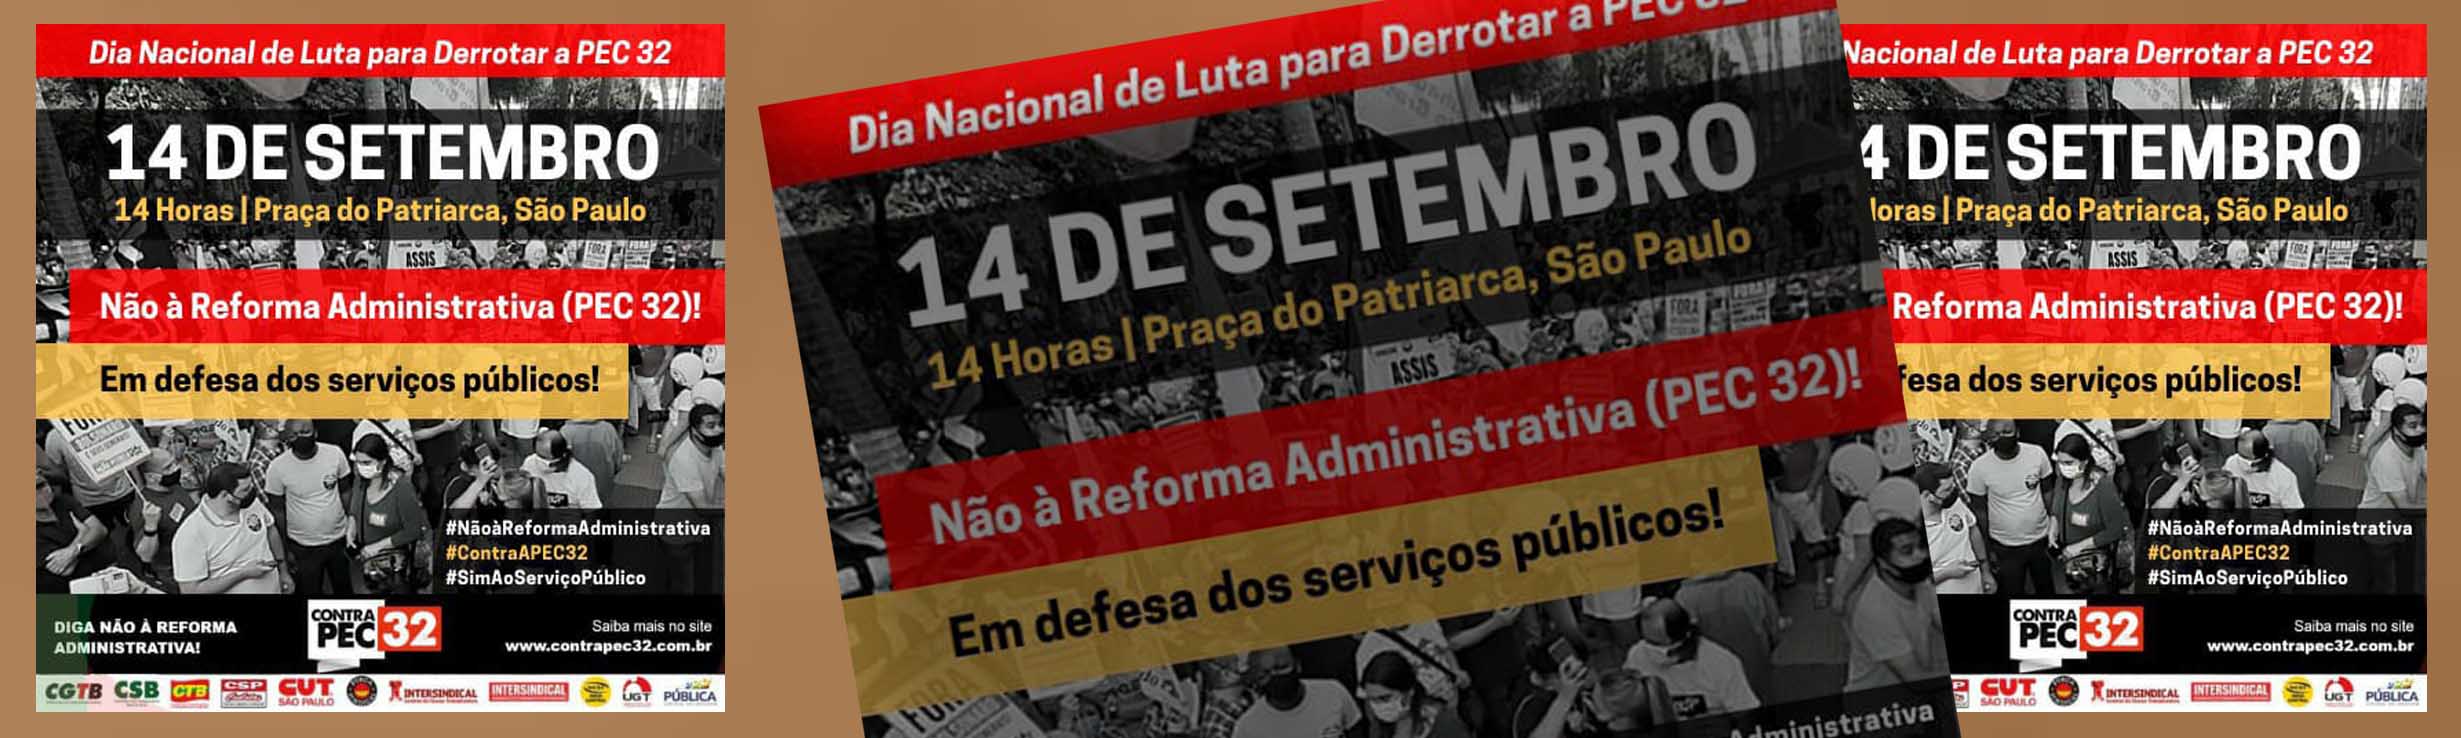 Luta contra a PEC 32: Semana é decisiva para barrar a reforma administrativa e o desmonte dos serviços públicos. Participe